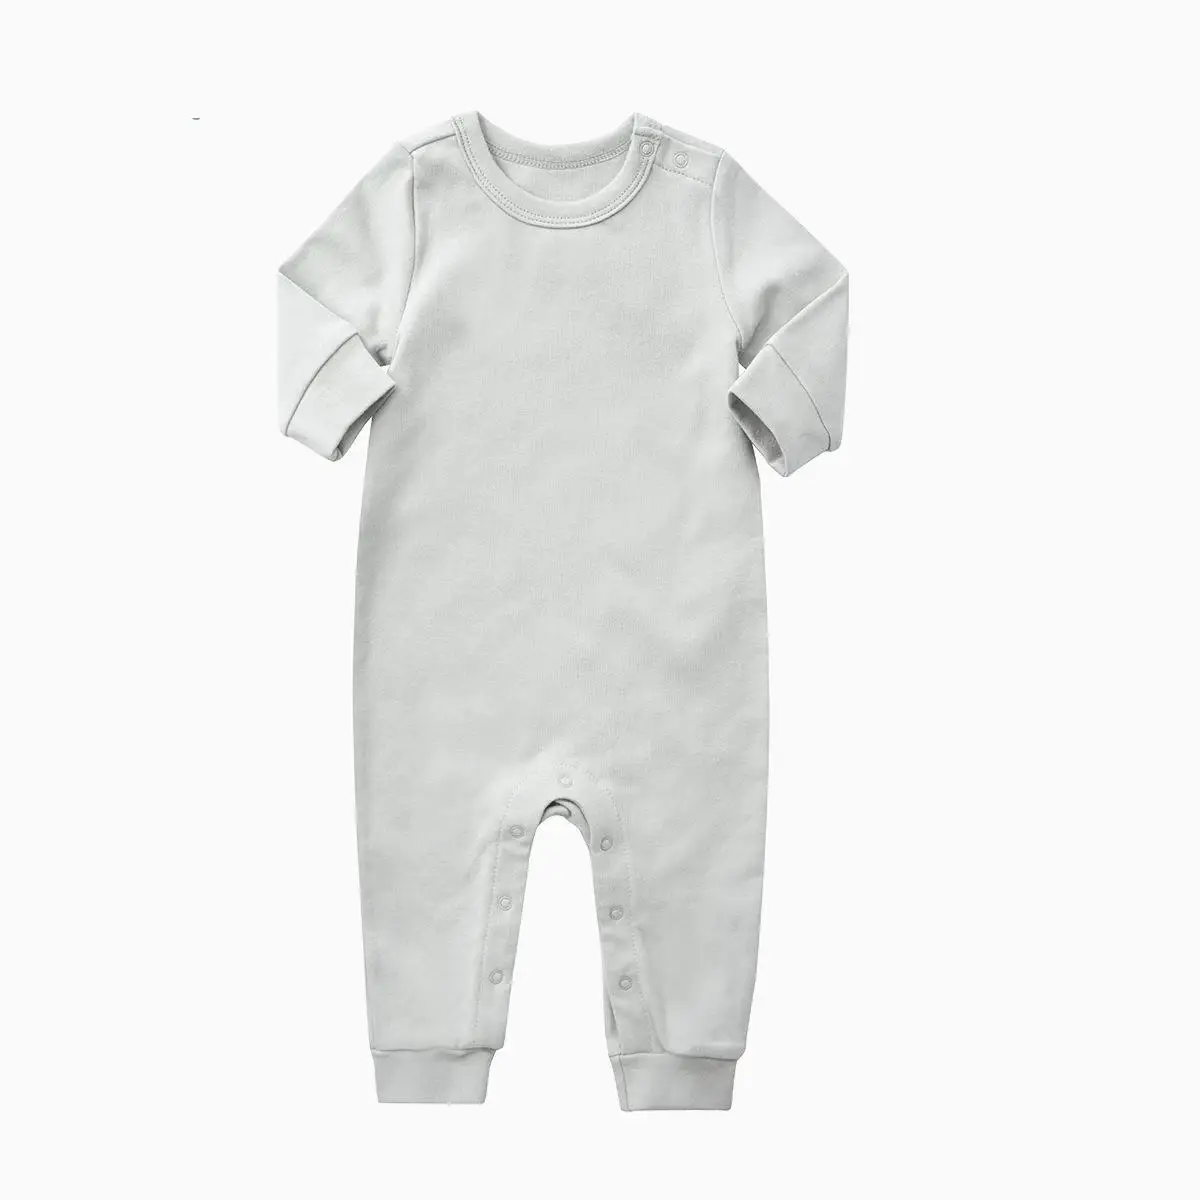 Orangemom 2018 babytøj af høj kvalitet, økologisk Bomuld-Romper Buksedragt med Lange Ærmer i bomuld baby pige tøj til nyfødte 0